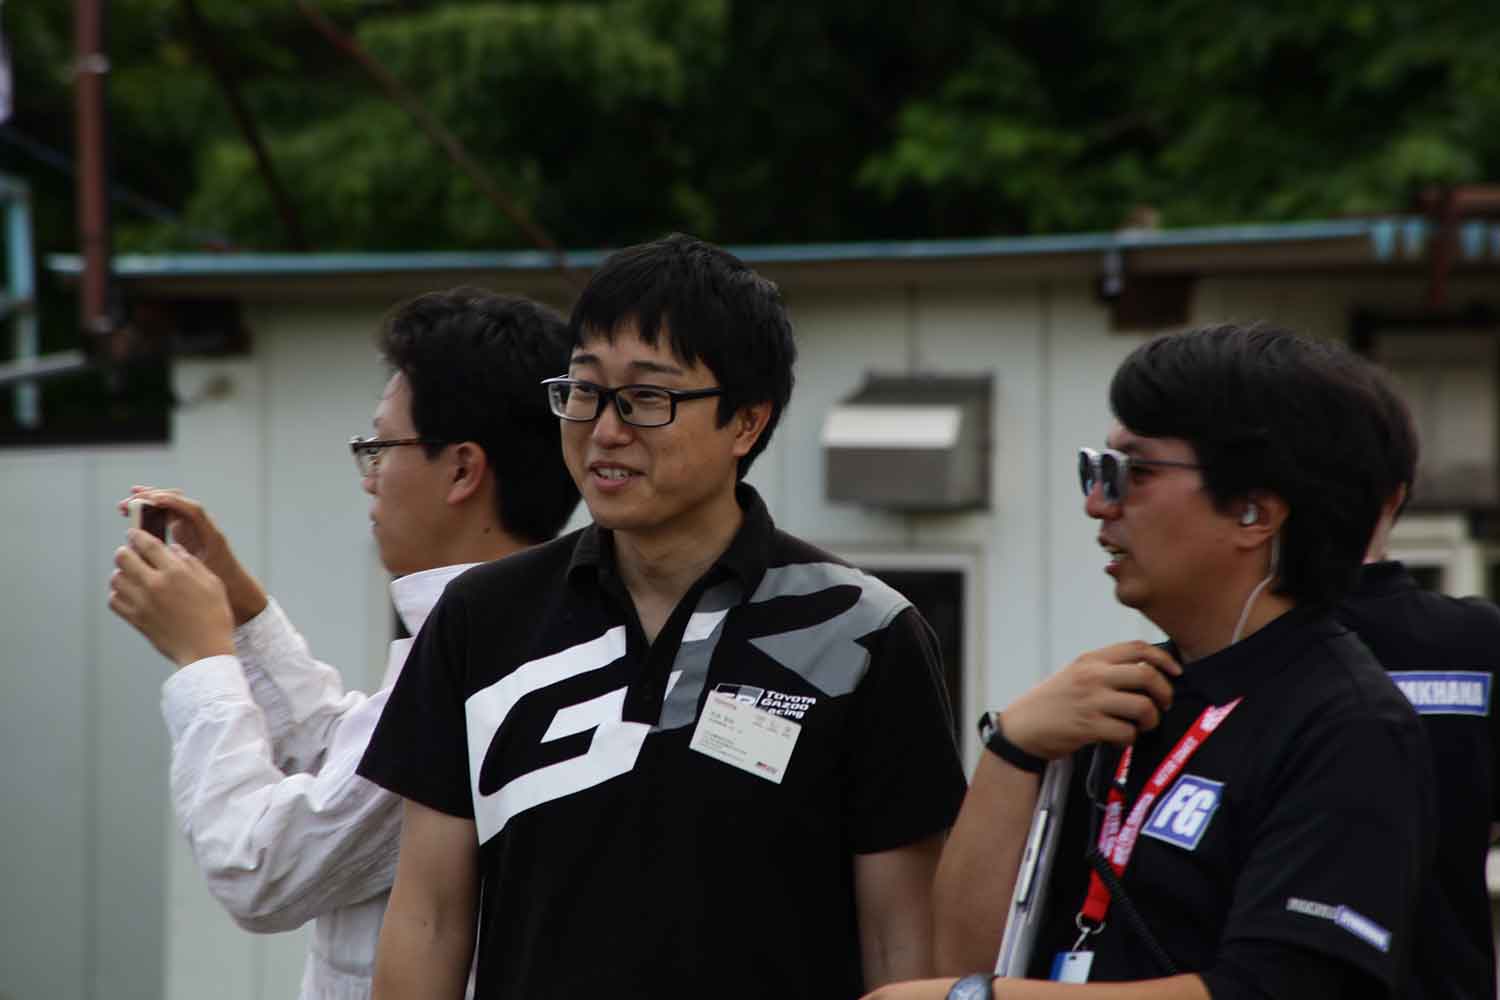 フォーミュラジムカーナの大会で関係者と話をするTOYOTA GAZOO Racingの石井宏尚さん